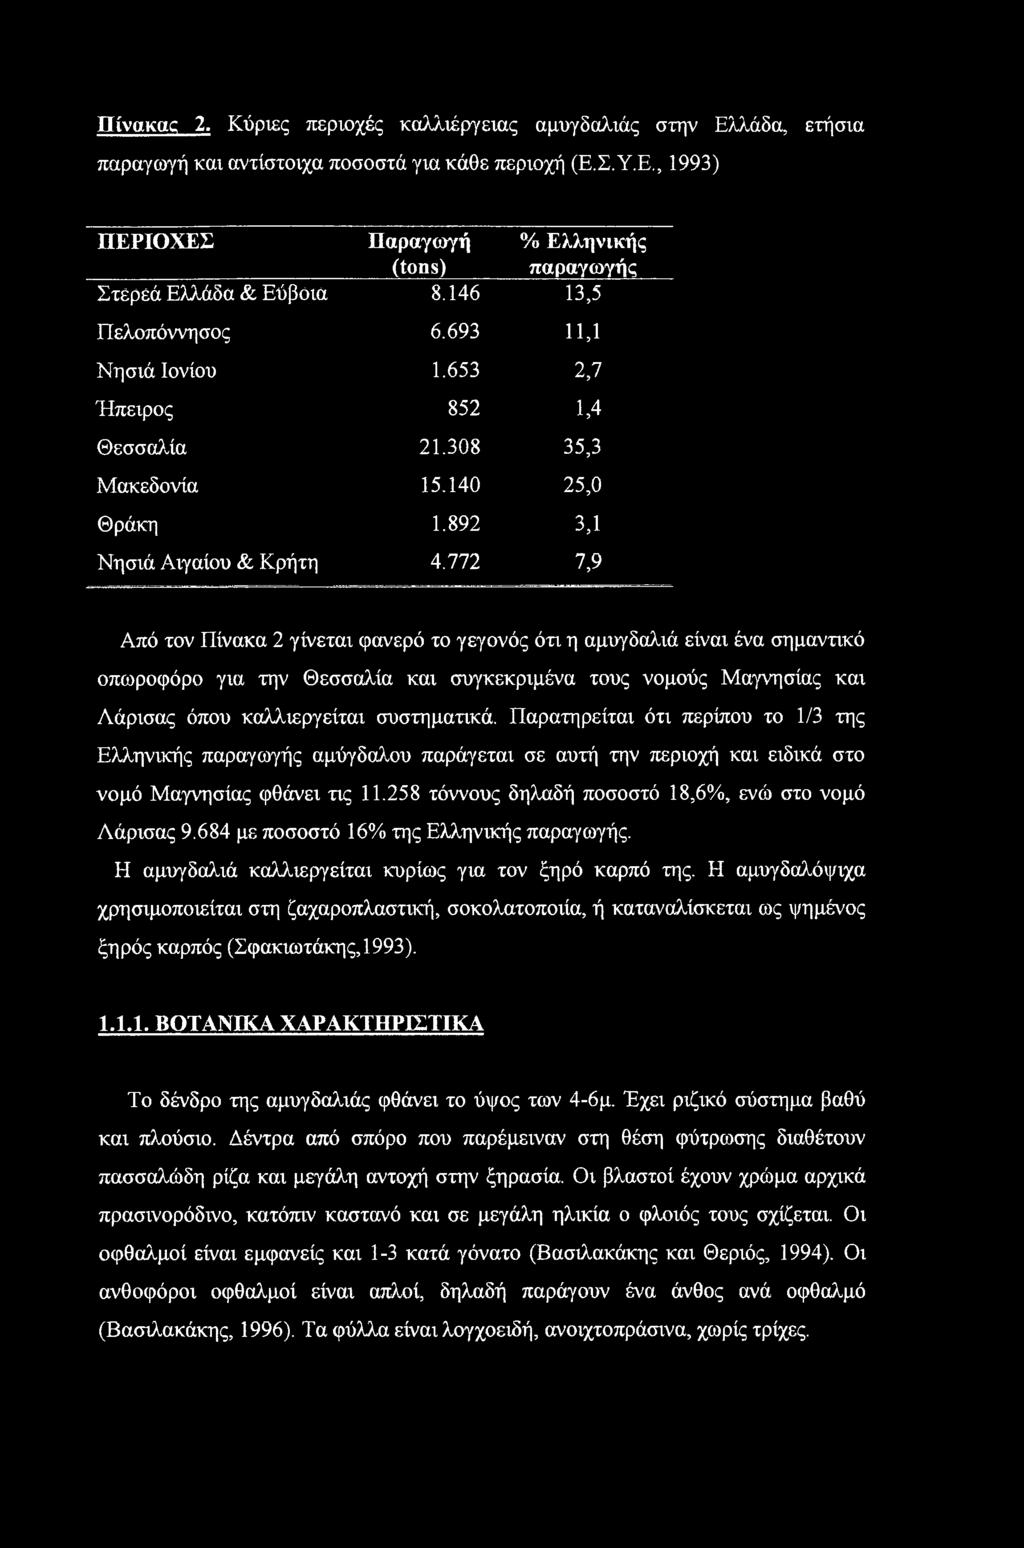 772 7,9 Από τον Πίνακα 2 γίνεται φανερό το γεγονός ότι η αμυγδαλιά είναι ένα σημαντικό οπωροφόρο για την Θεσσαλία και συγκεκριμένα τους νομούς Μαγνησίας και Λάρισας όπου καλλιεργείται συστηματικά.